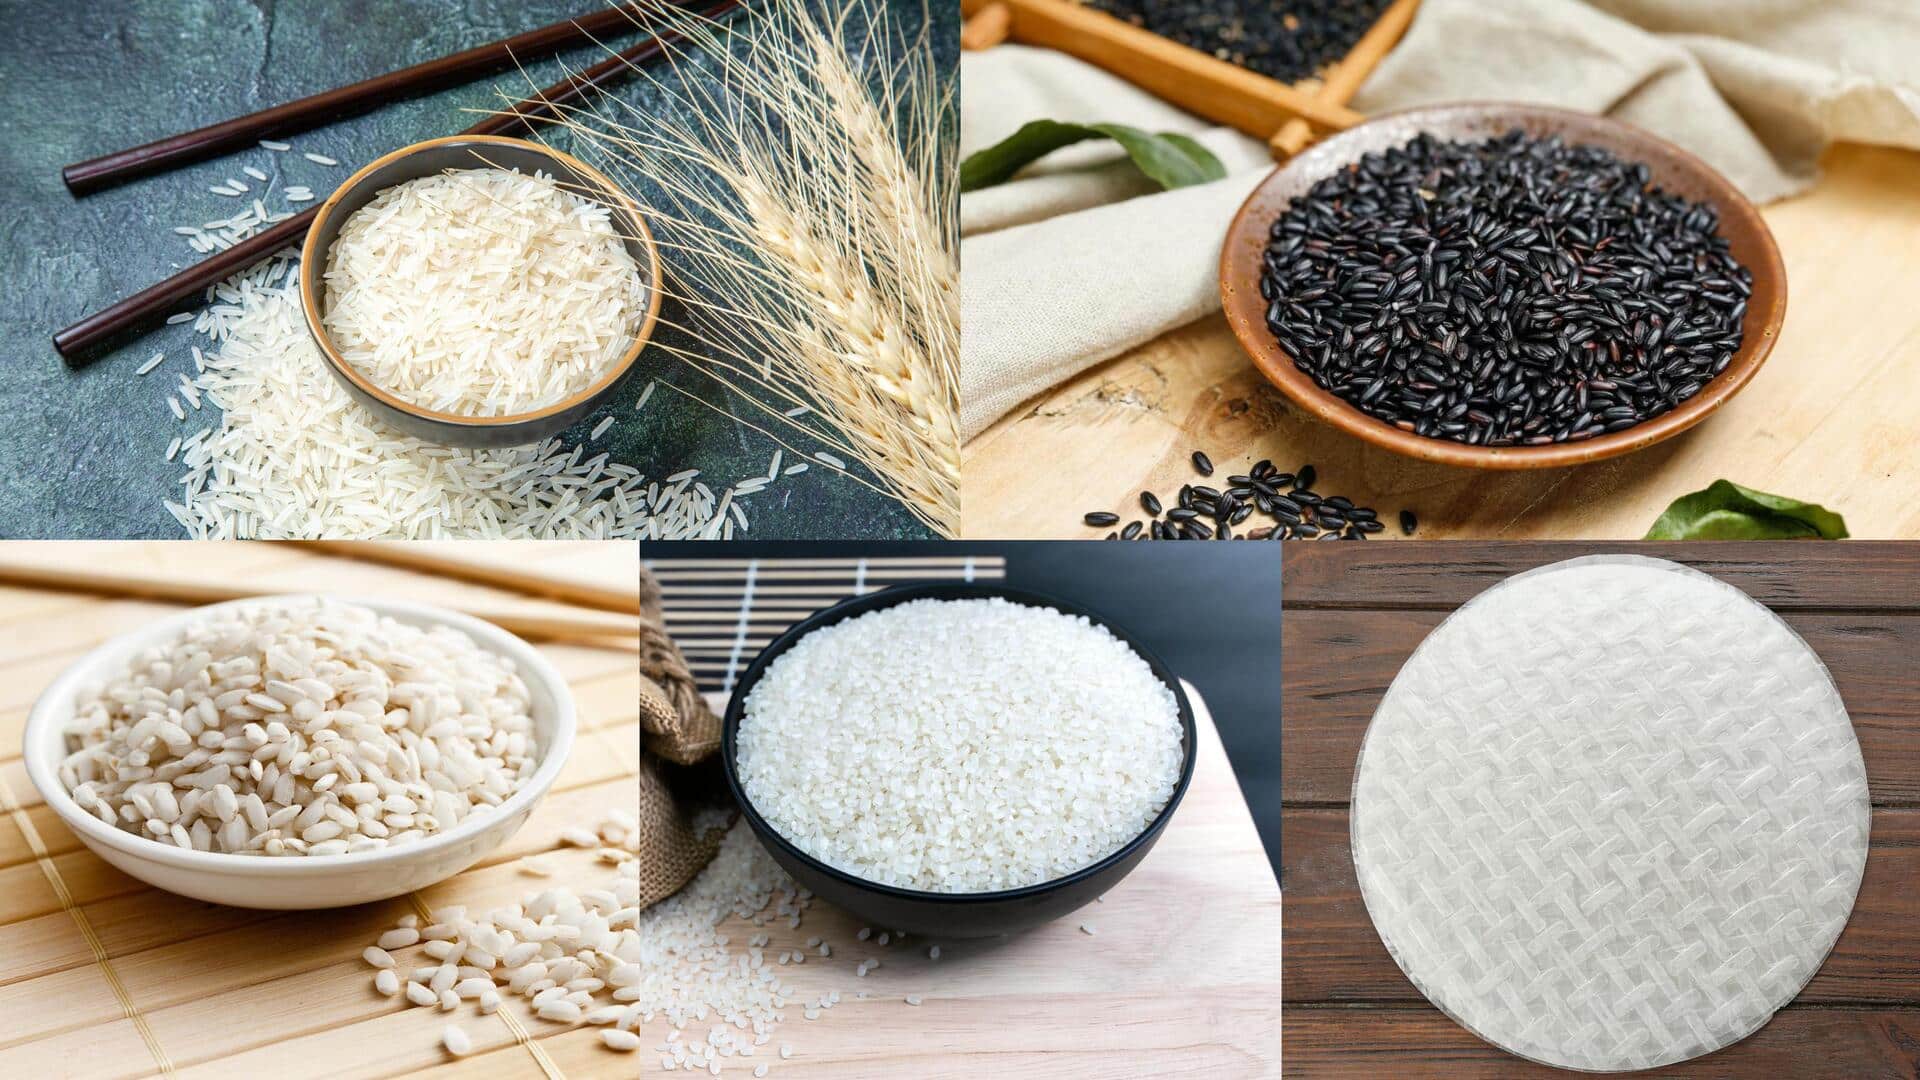 ये हैं चावलों की 5 प्रमुख किस्में, दुनियाभर में होता है सबसे ज्यादा इस्तेमाल